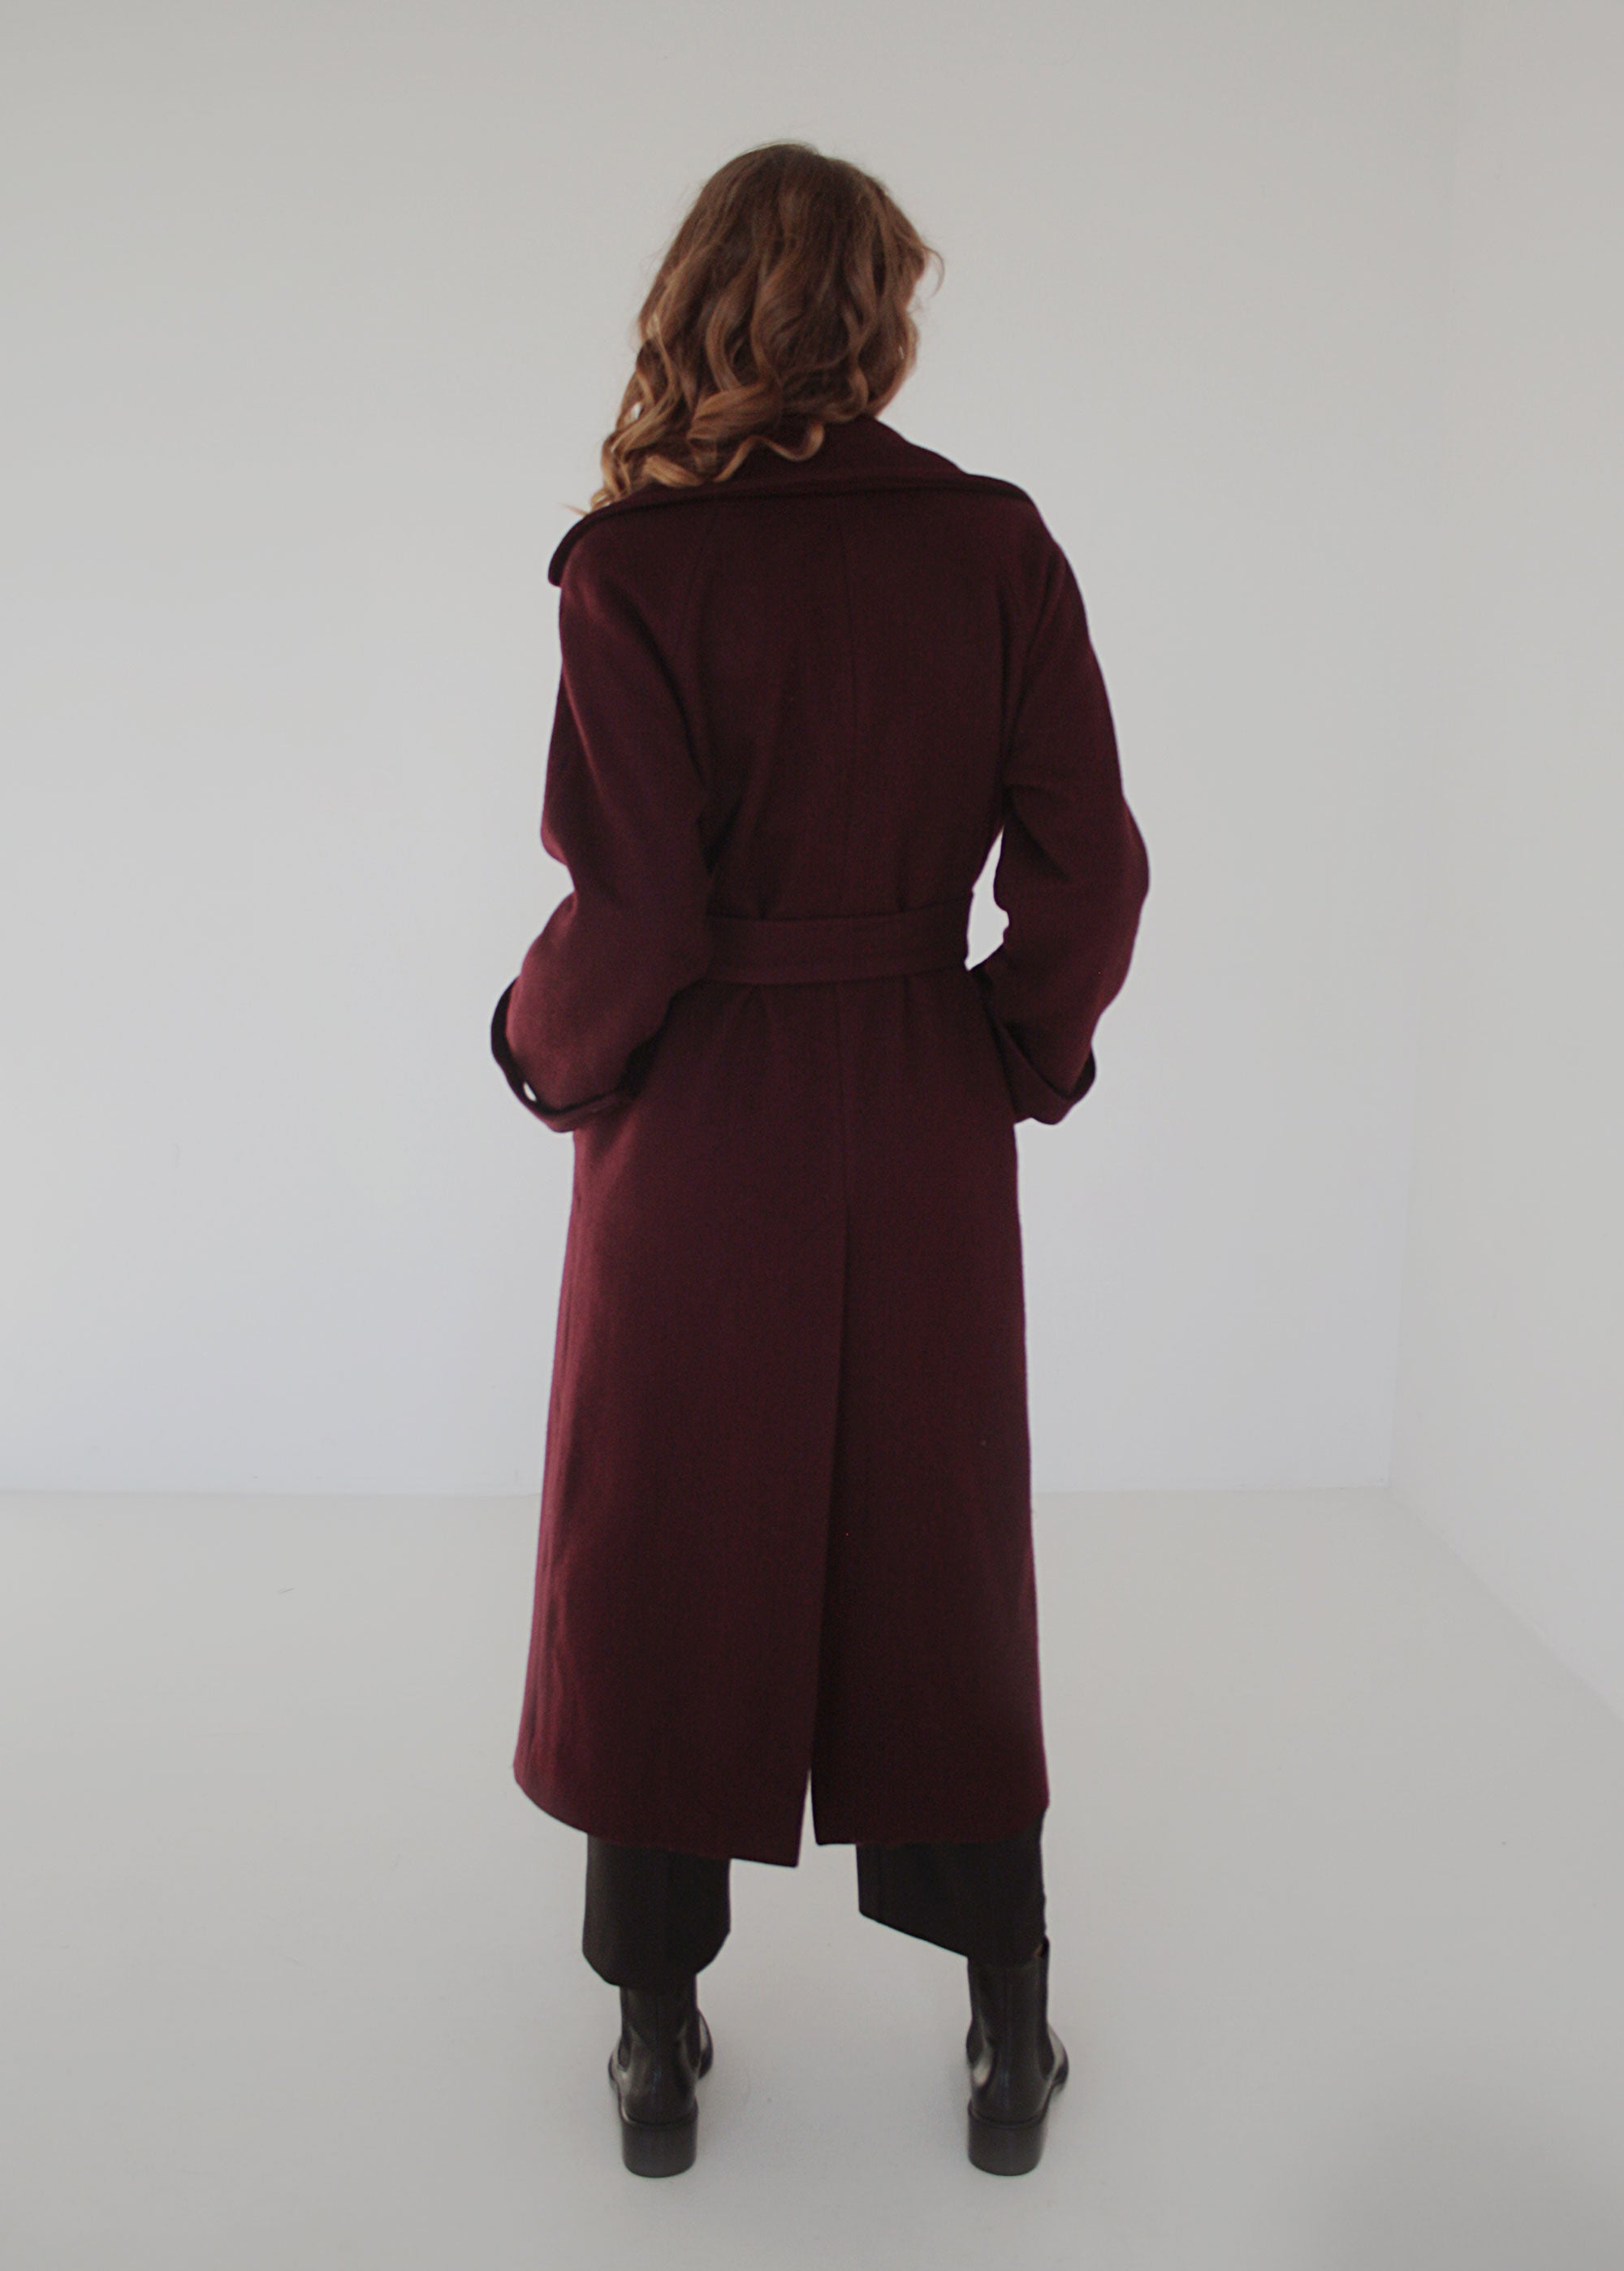 XS/S, S/M, L/XL "Emma" Burgundy Classic Wool Coat